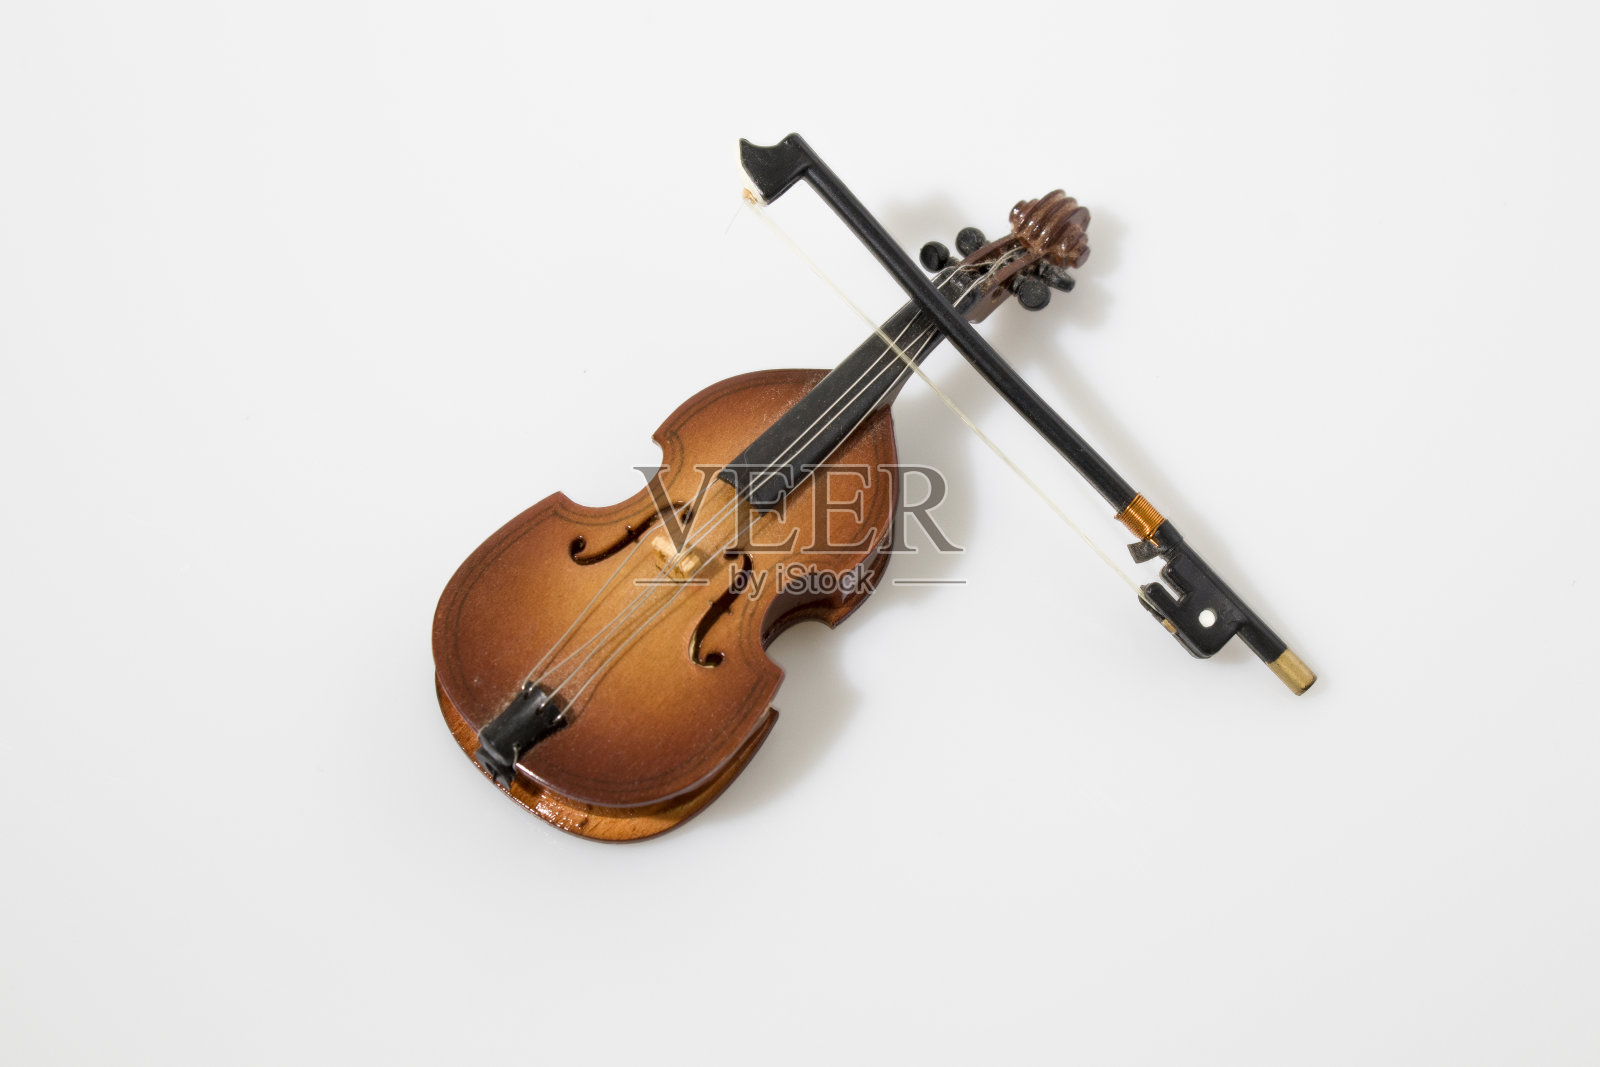 大提琴仪器组成照片摄影图片